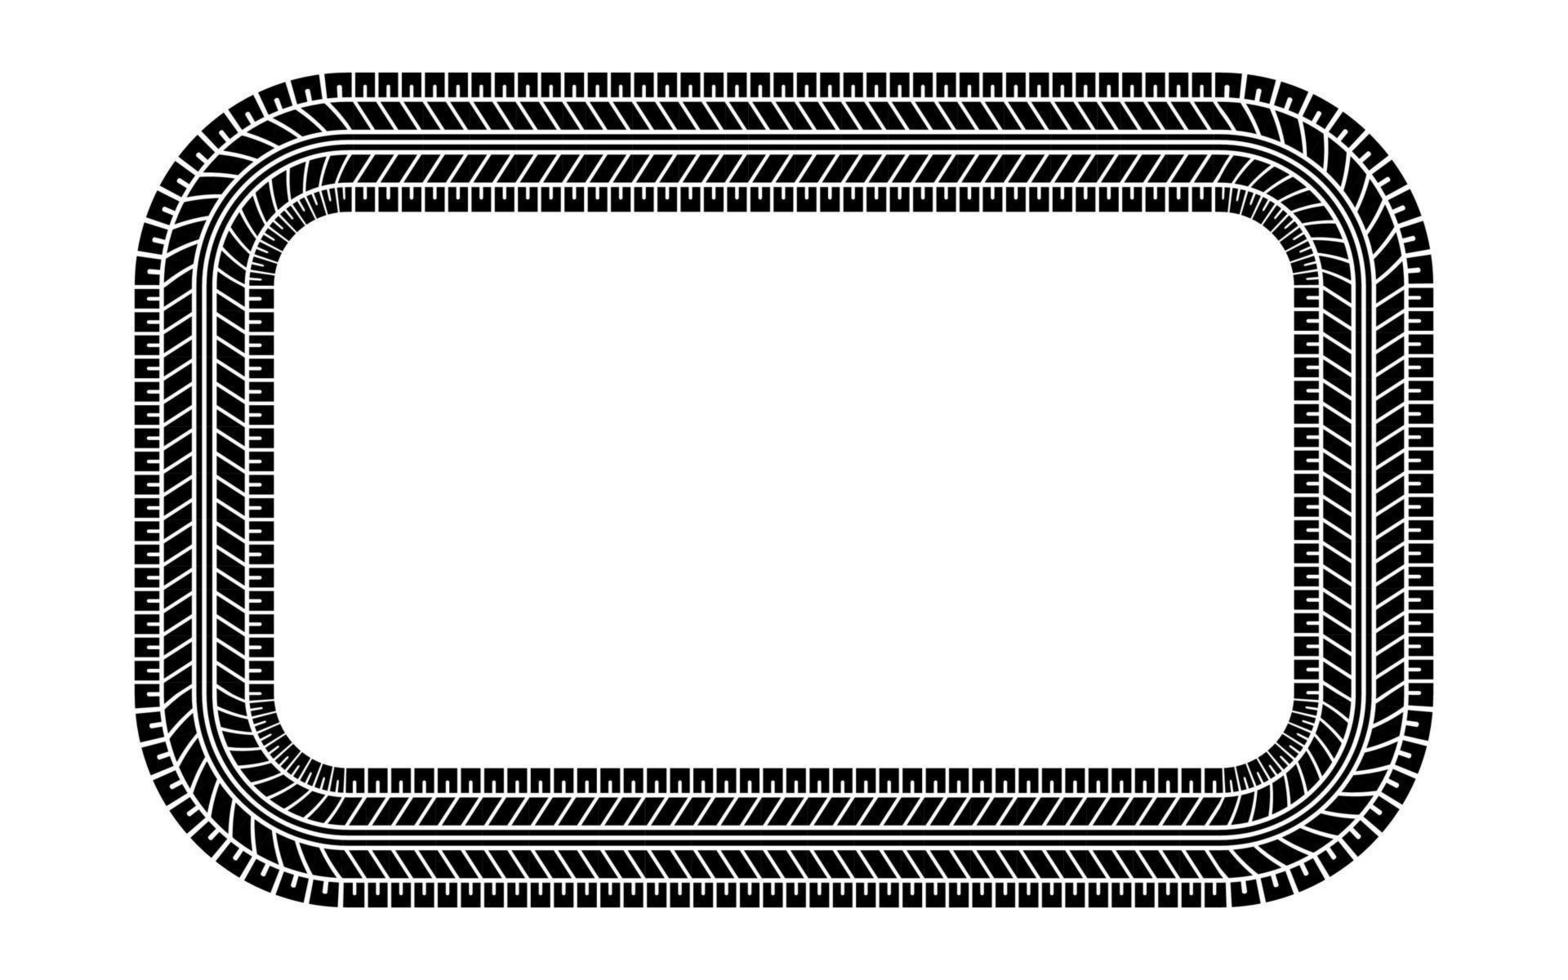 cadre rectangulaire de bande de roulement de pneu automatique. modèle de pneu de voiture et de moto, impression de piste de bande de roulement de pneu de roue. bordure carrée de pneu noir. illustration vectorielle isolée sur fond blanc vecteur